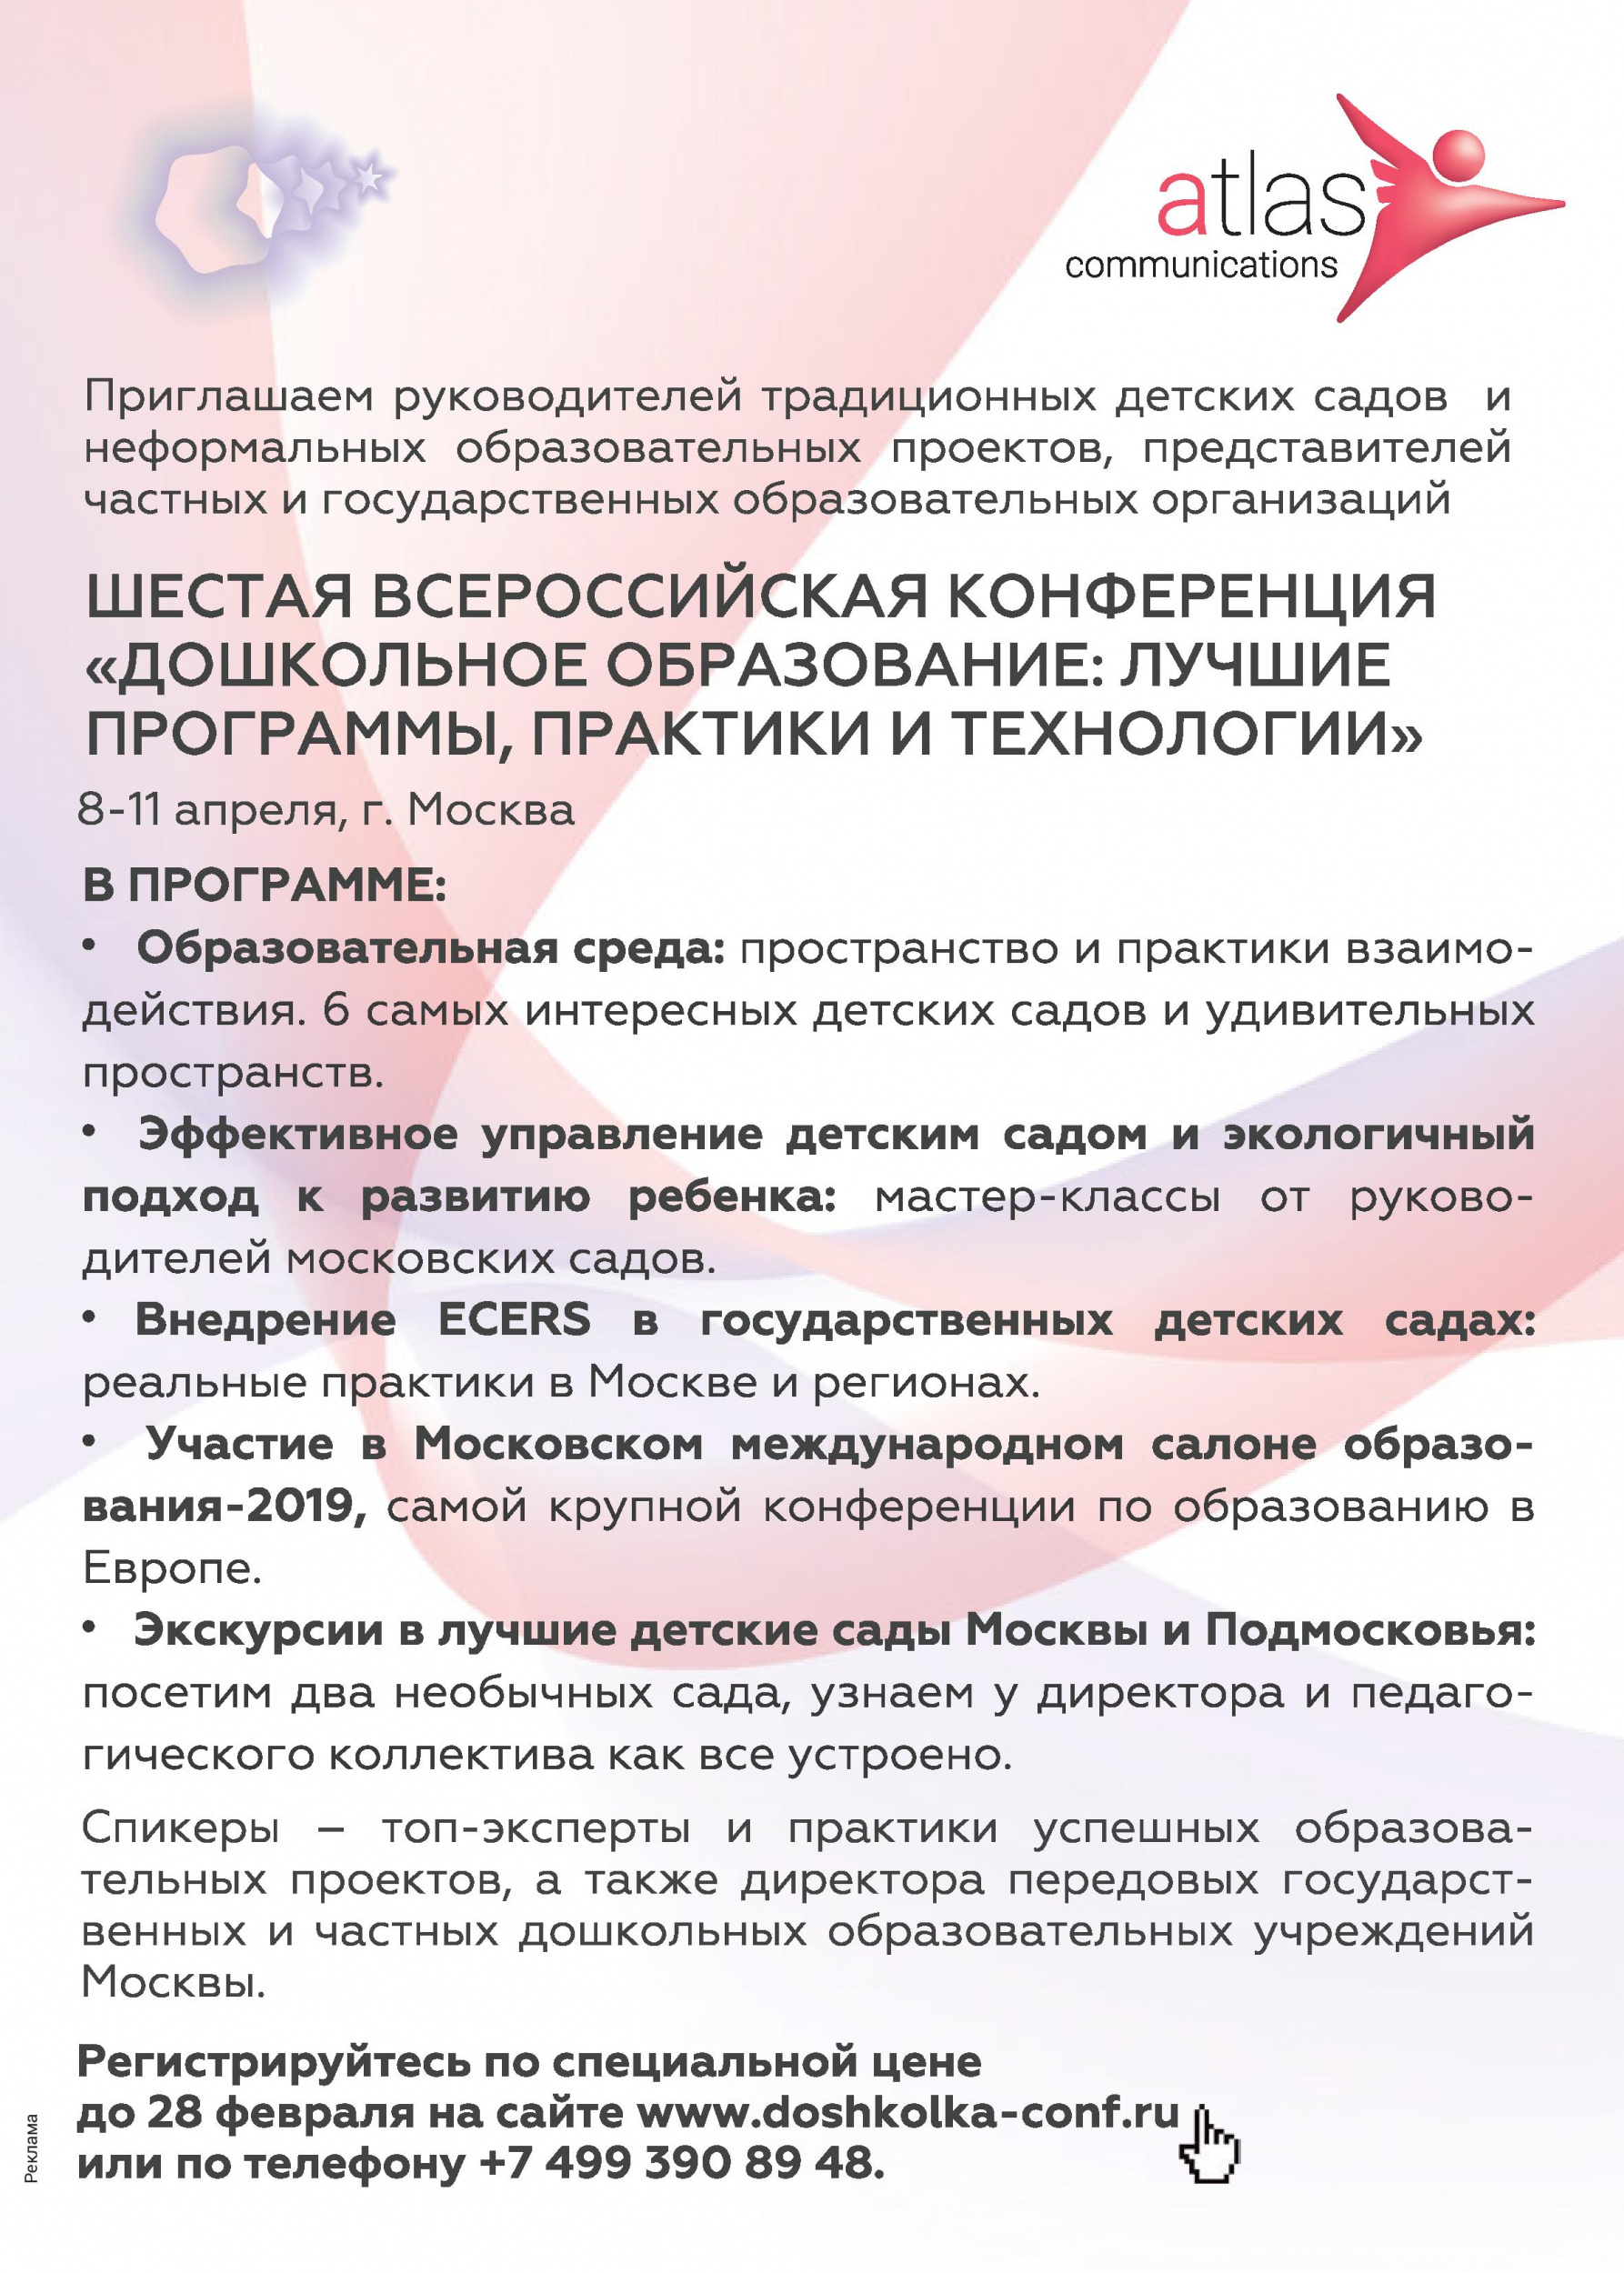 Шестая всероссийская конференция «Дошкольное образование»